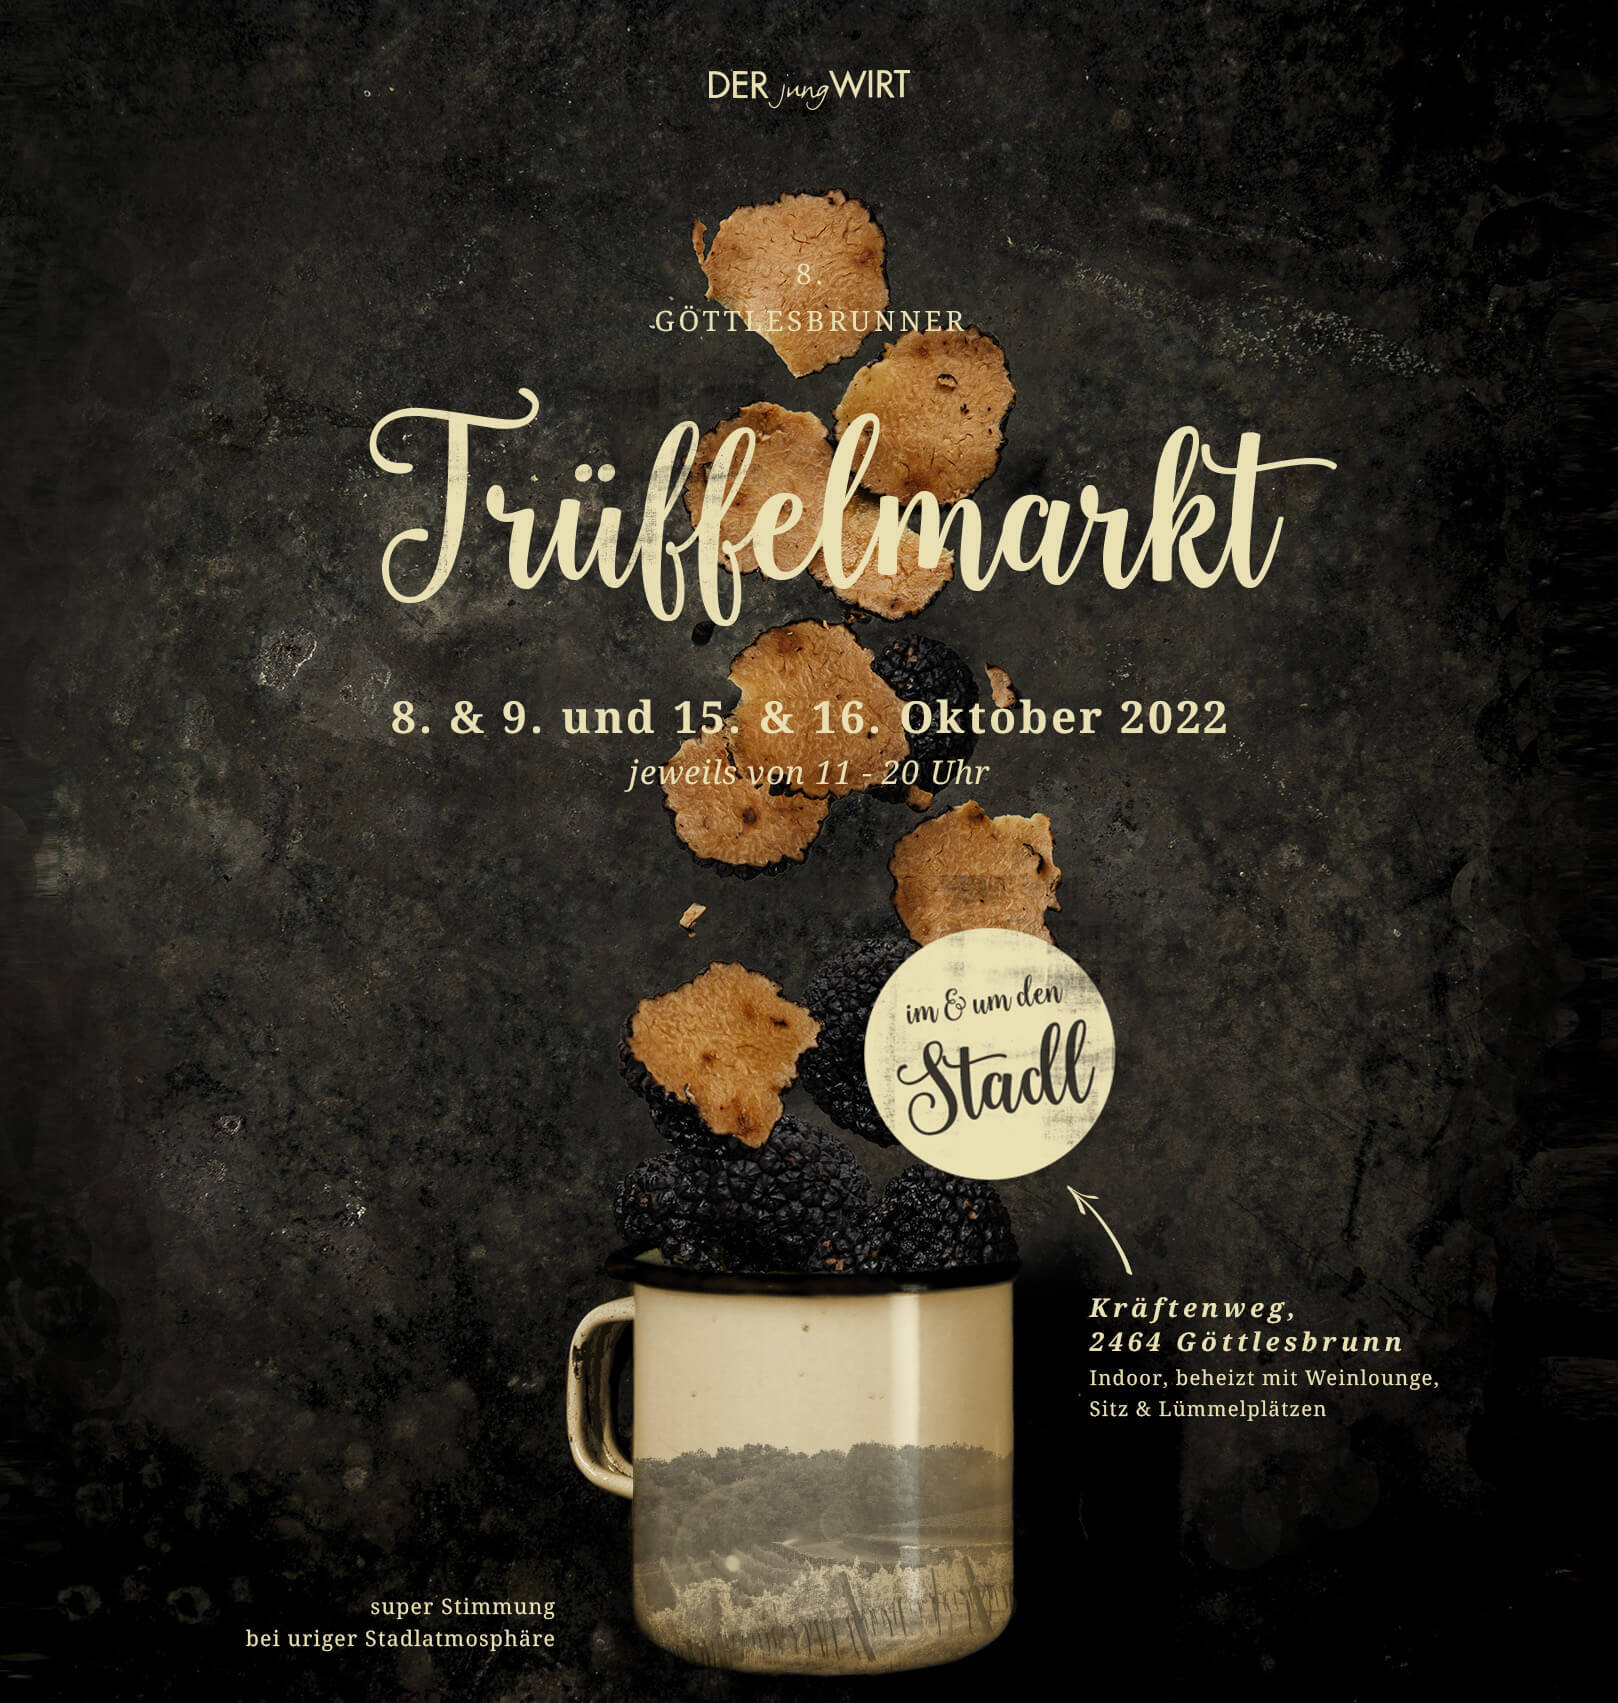 8. Göttlesbrunner Trüffelmarkt findet von 8.10. - 9.10. und 15.10. - 16.10.2022 jeweils von 11-20 Uhr statt.